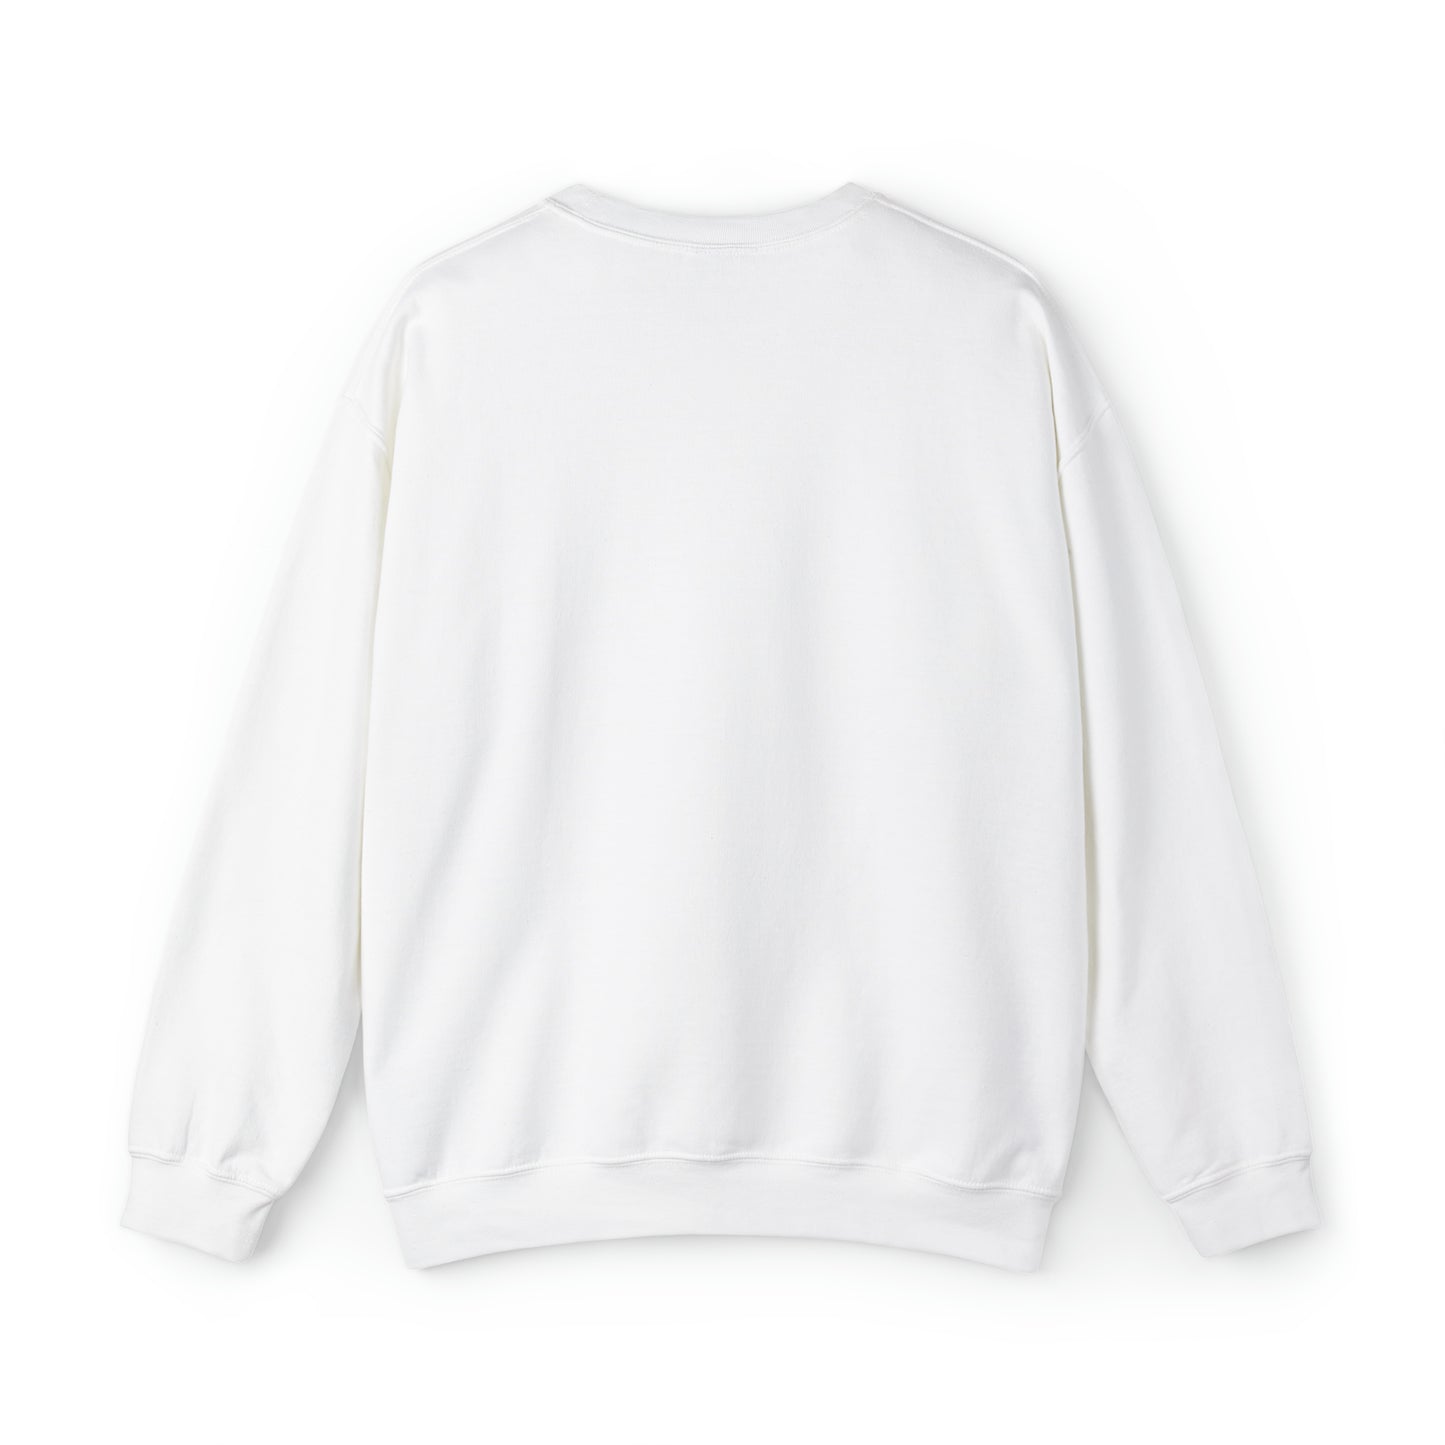 Sweatshirt:  merry quiltmas crewneck sweatshirt